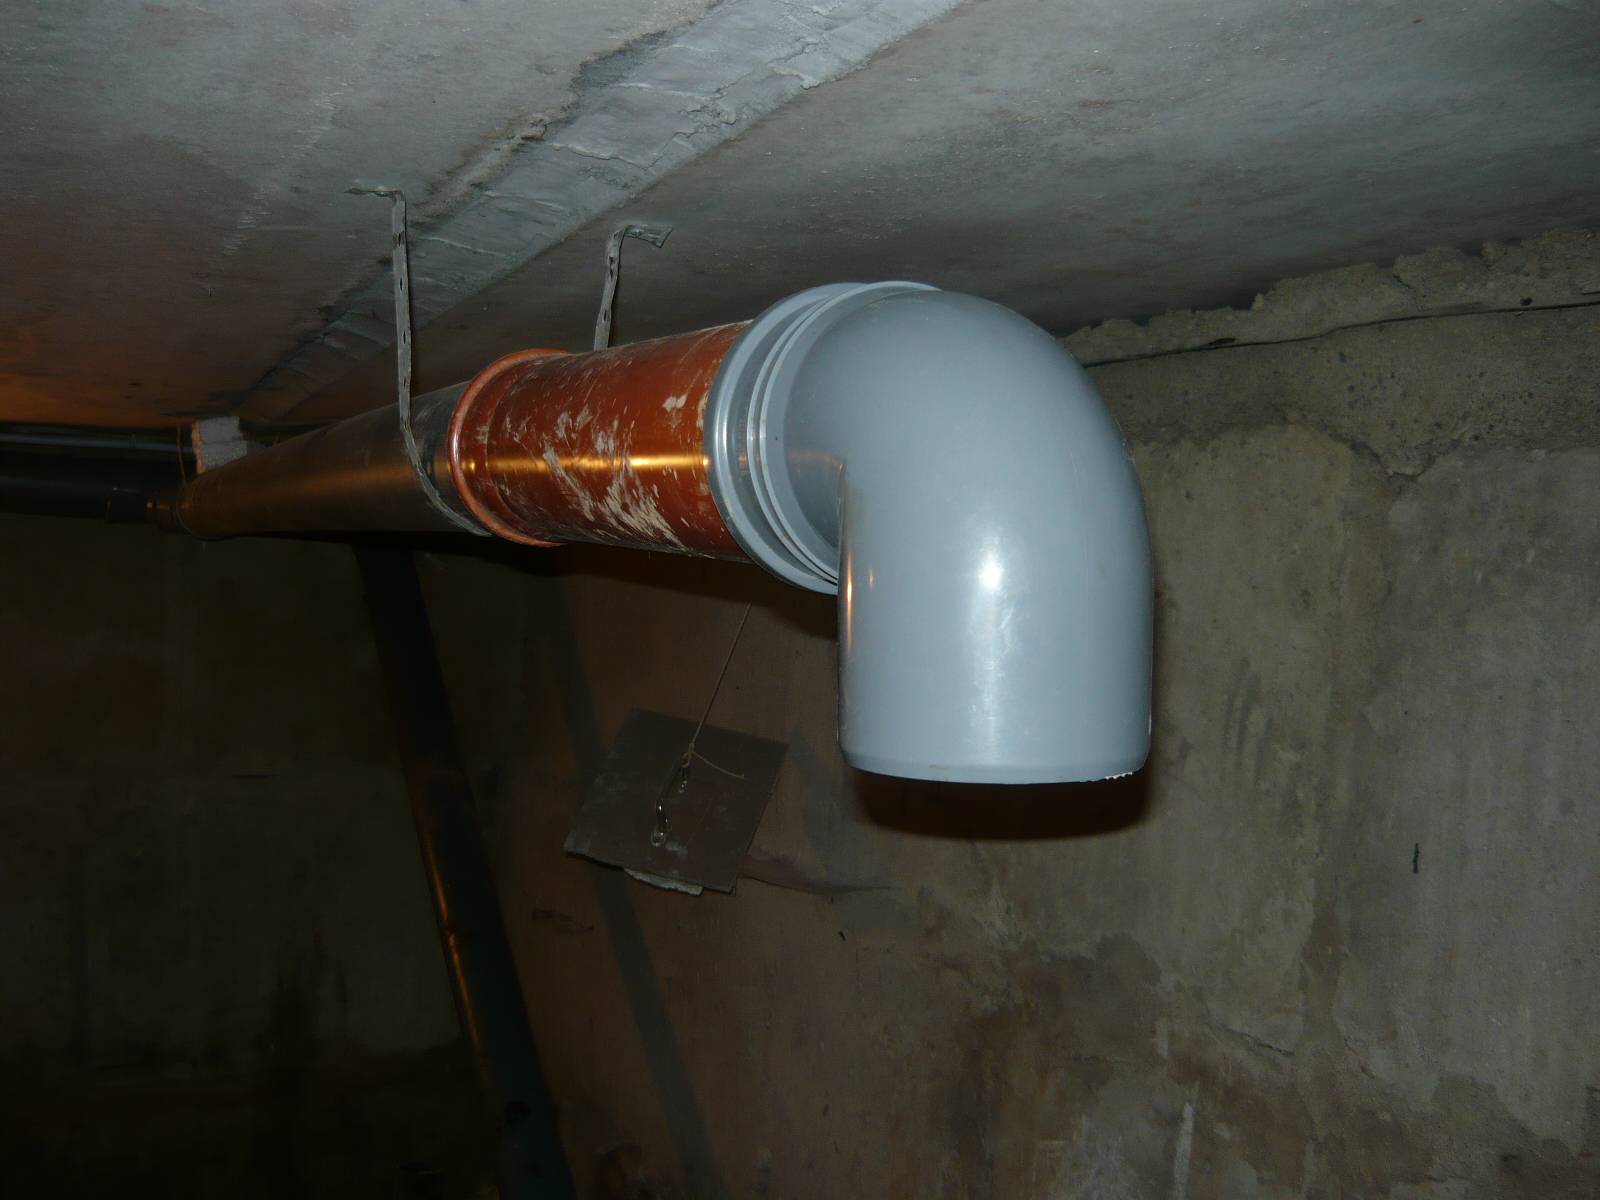 Как сделать вентиляцию в бане из пластиковой трубы диаметром 100 мм - инструкция и схема